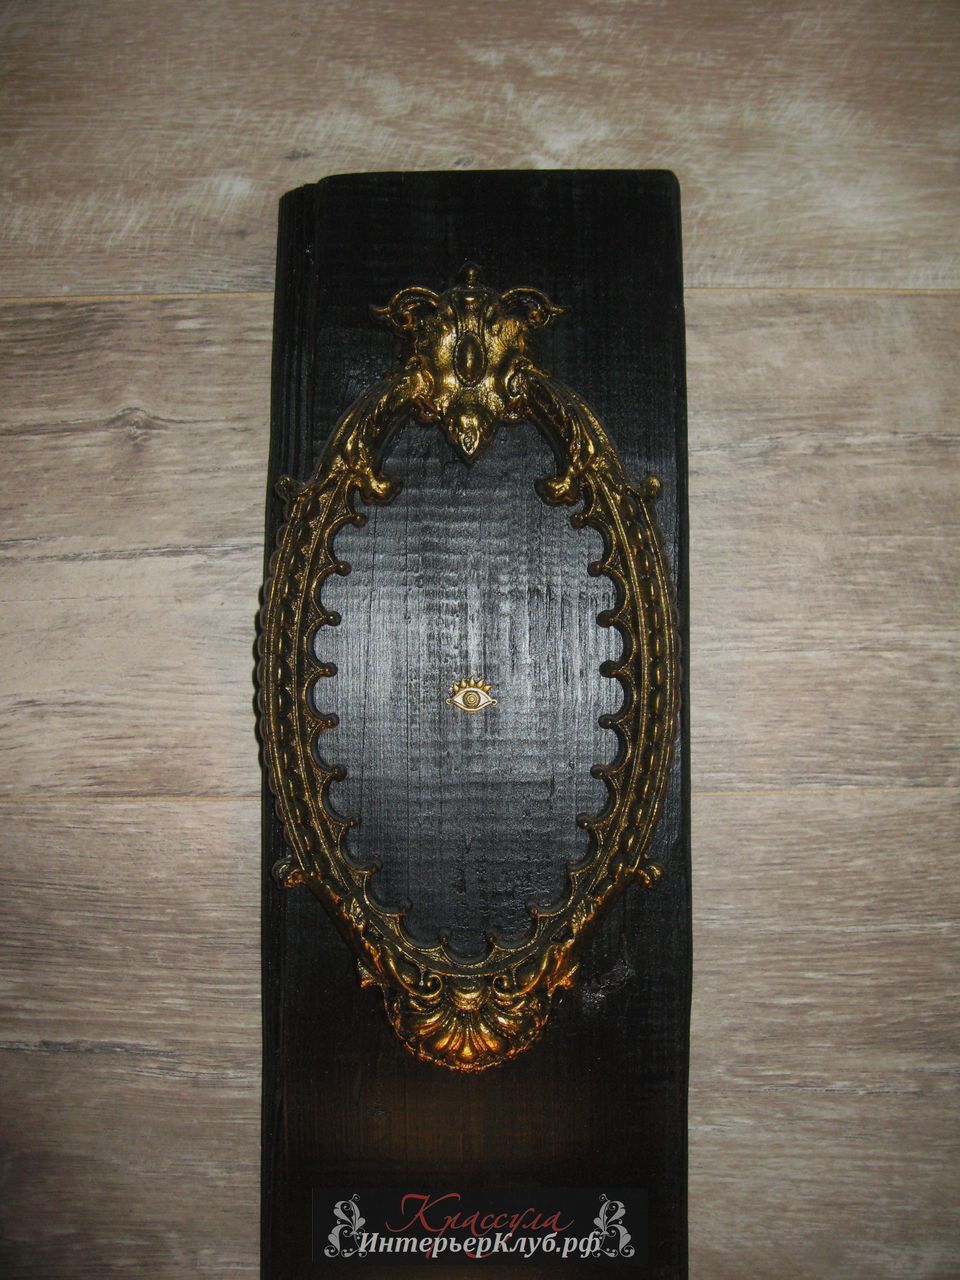 105 Светильник Око - амбарная доска, с элементами декора, цвет черный - золото. Эксклюзивные светильники ручной работы